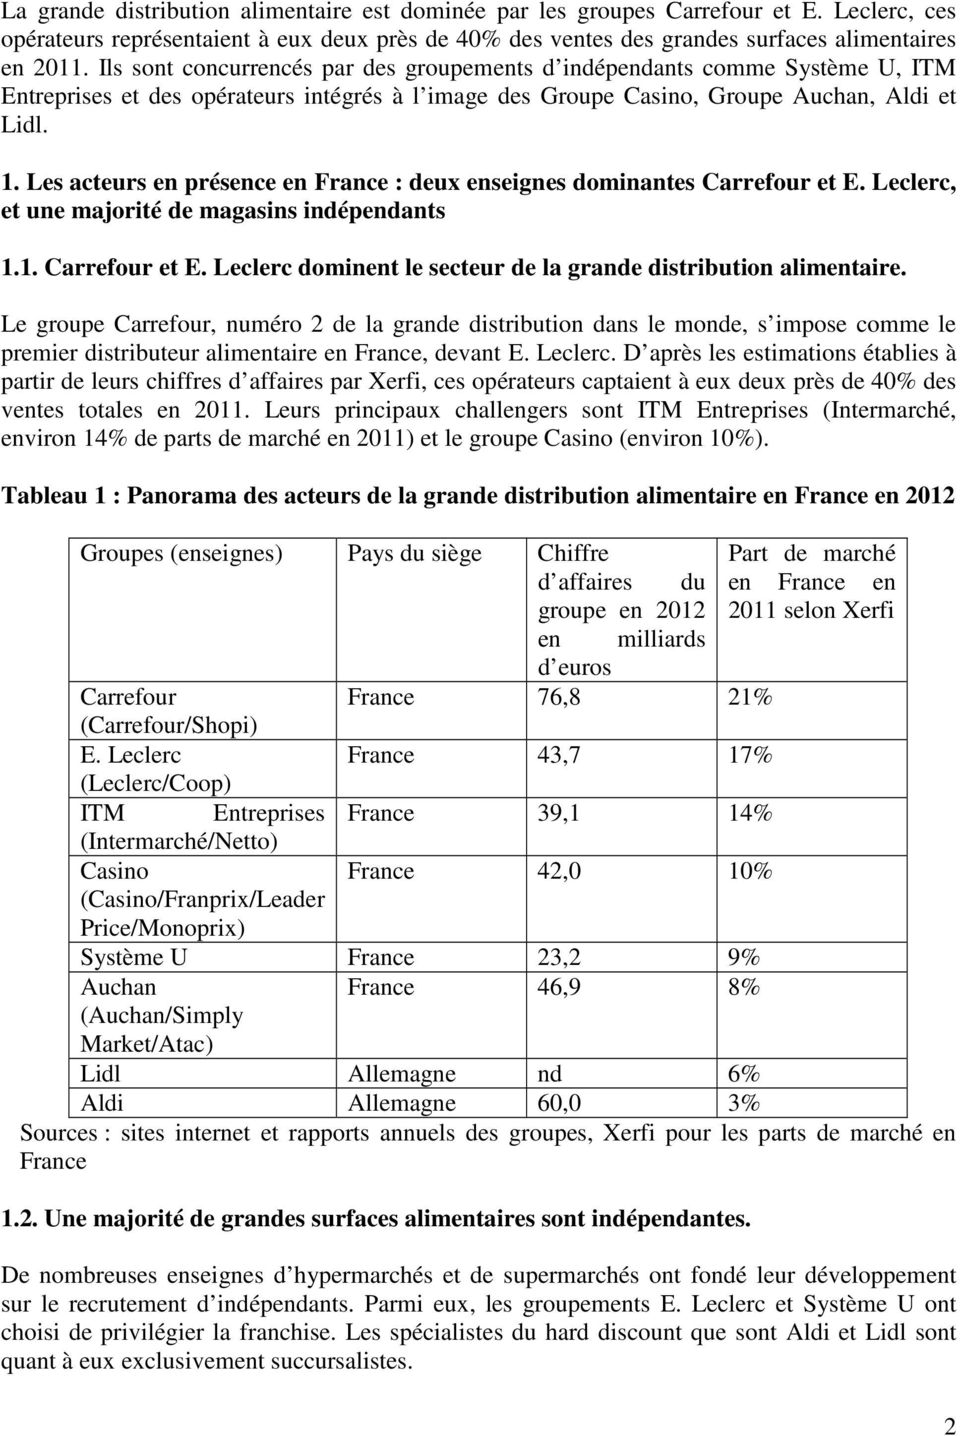 Les acteurs en présence en France : deux enseignes dominantes Carrefour et E. Leclerc, et une majorité de magasins indépendants 1.1. Carrefour et E. Leclerc dominent le secteur de la grande distribution alimentaire.